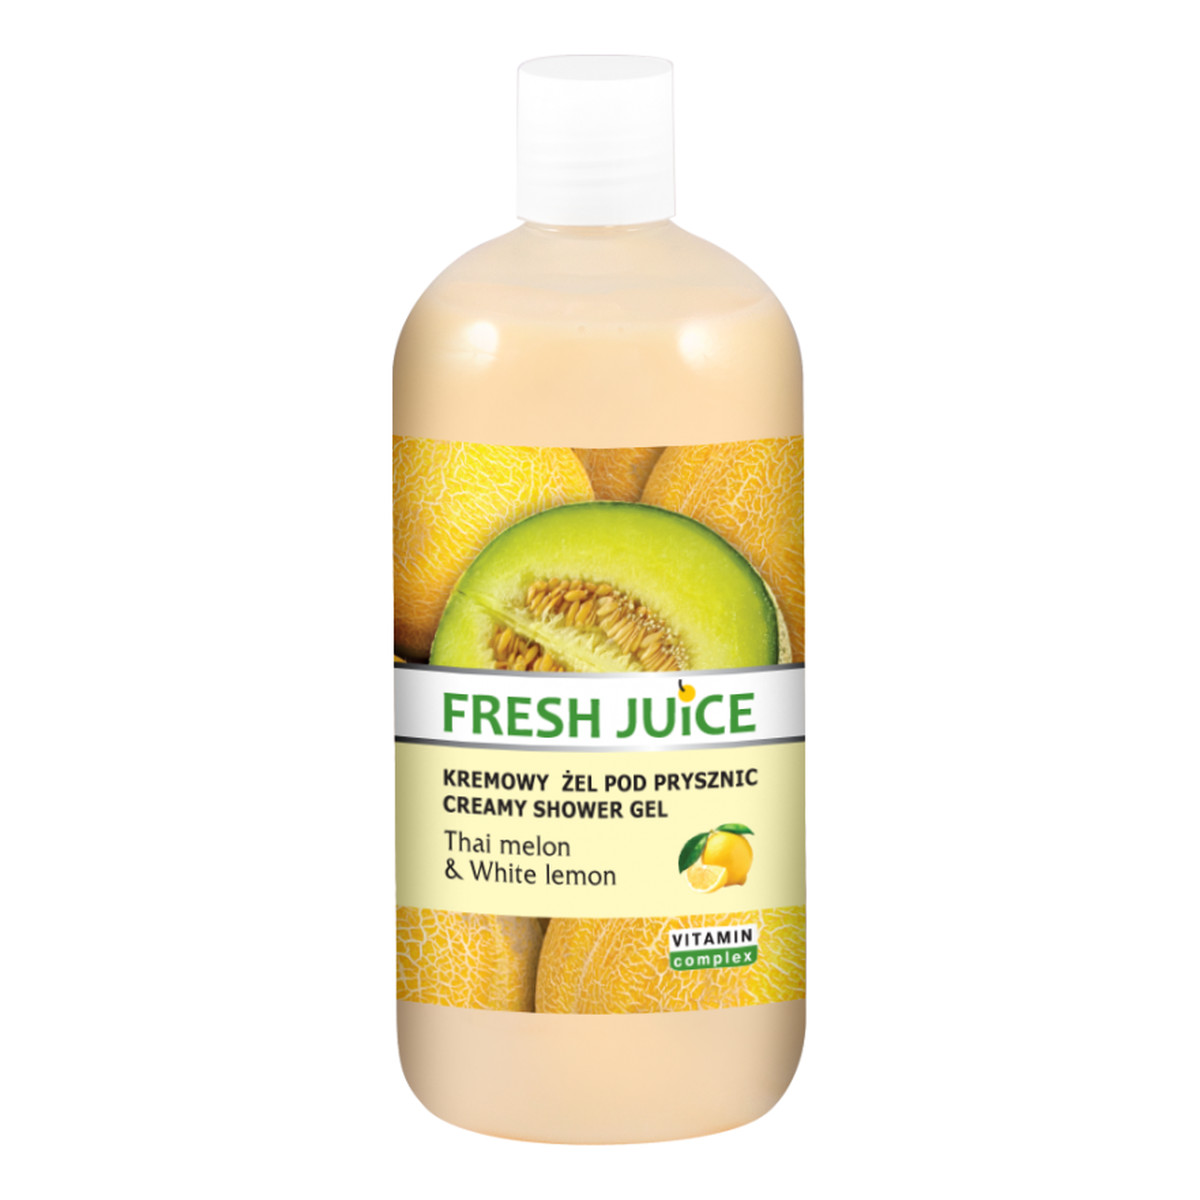 Fresh Juice Thai melon & White lemon Kremowy Żel Pod Prysznic 500ml